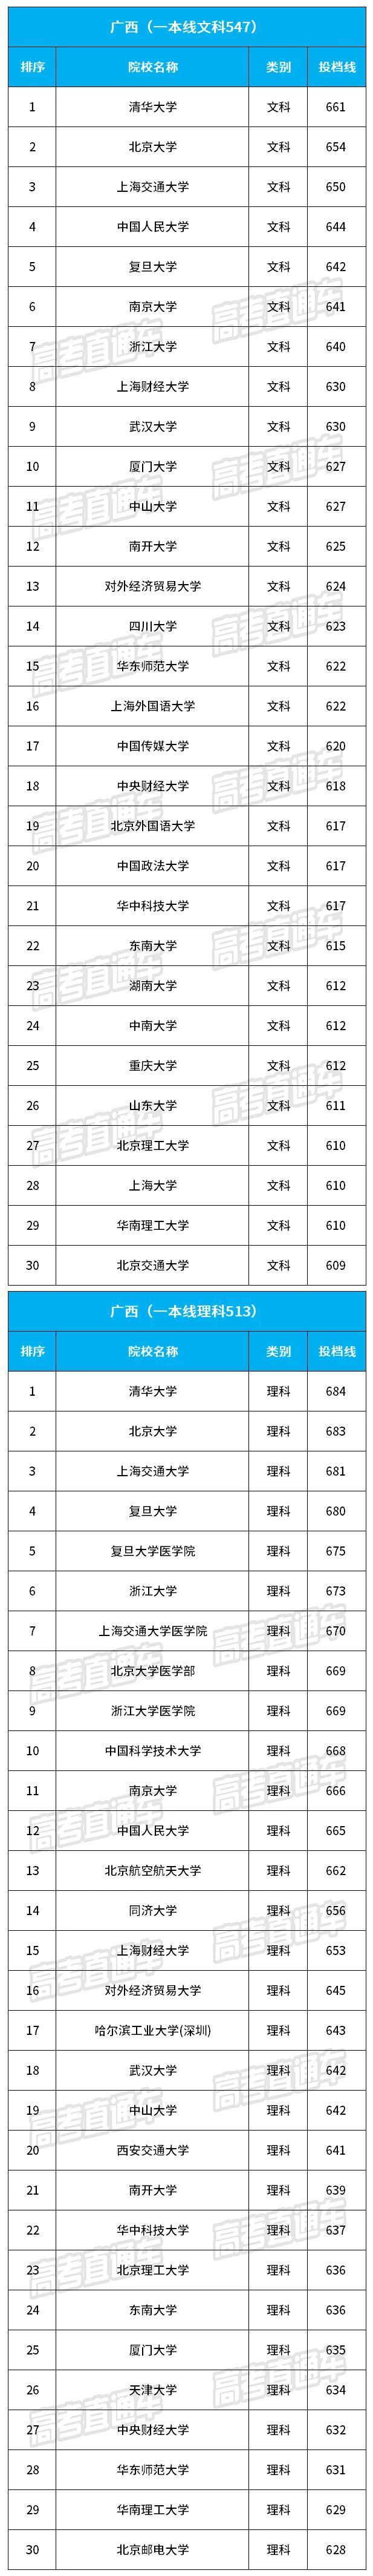 2018广西最难考的30所大学名单公布2